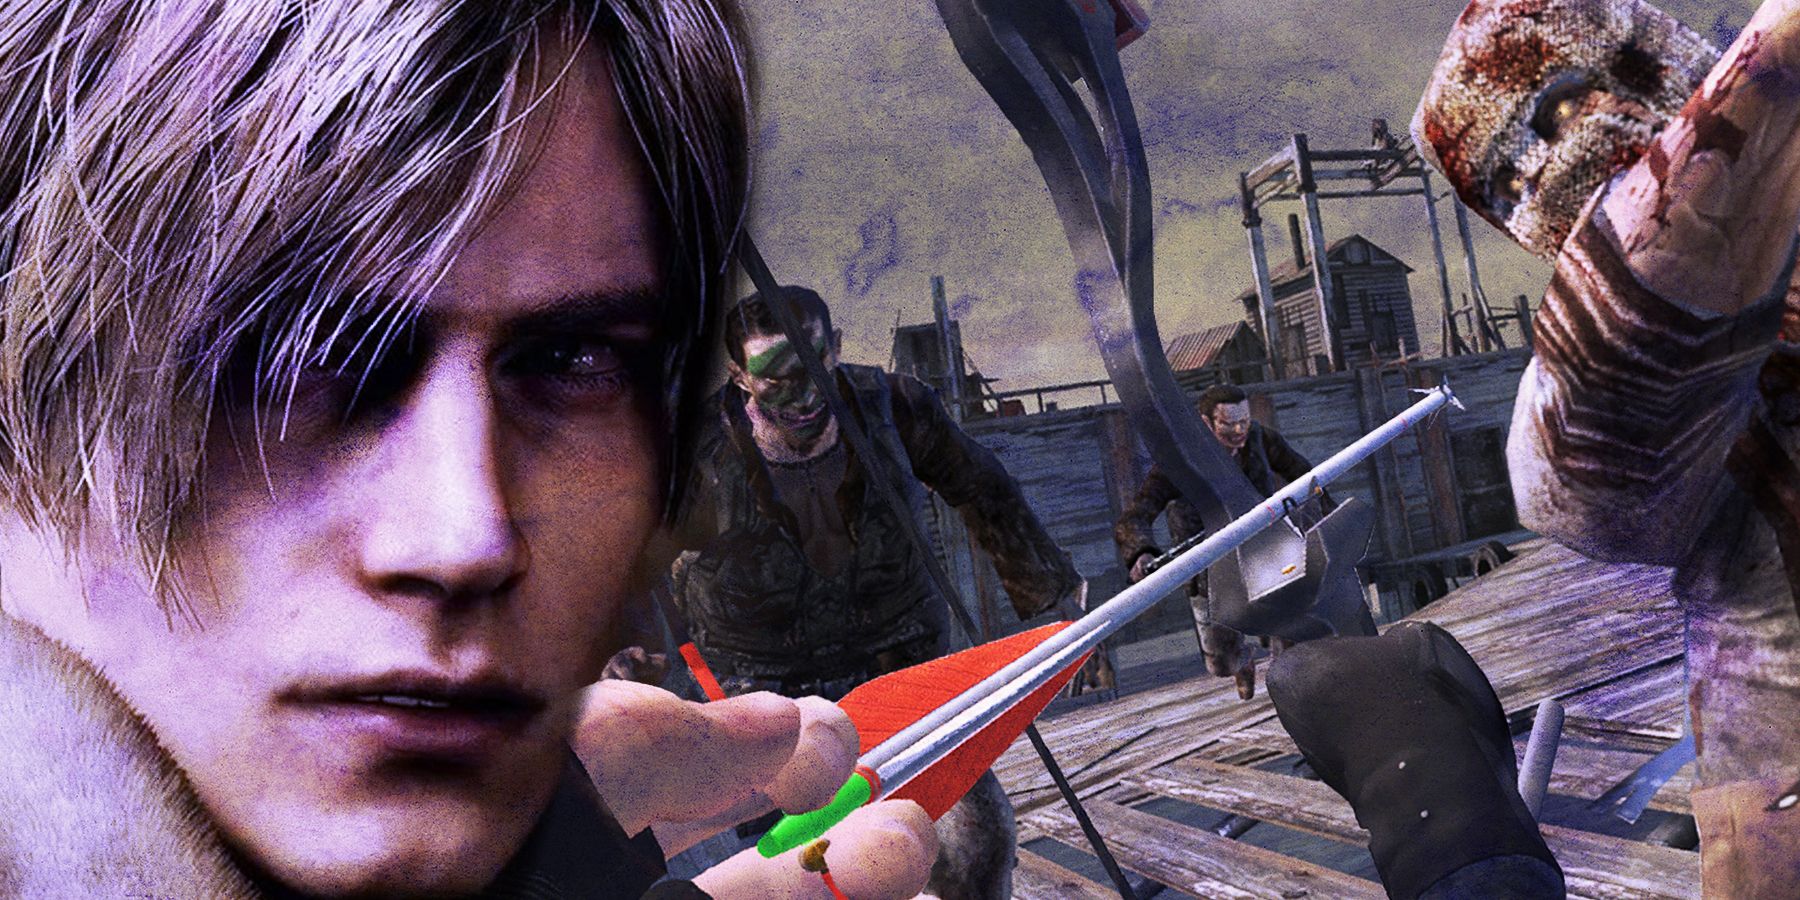 Resident Evil 4 (Nintendo GameCube, 2005) Video Game